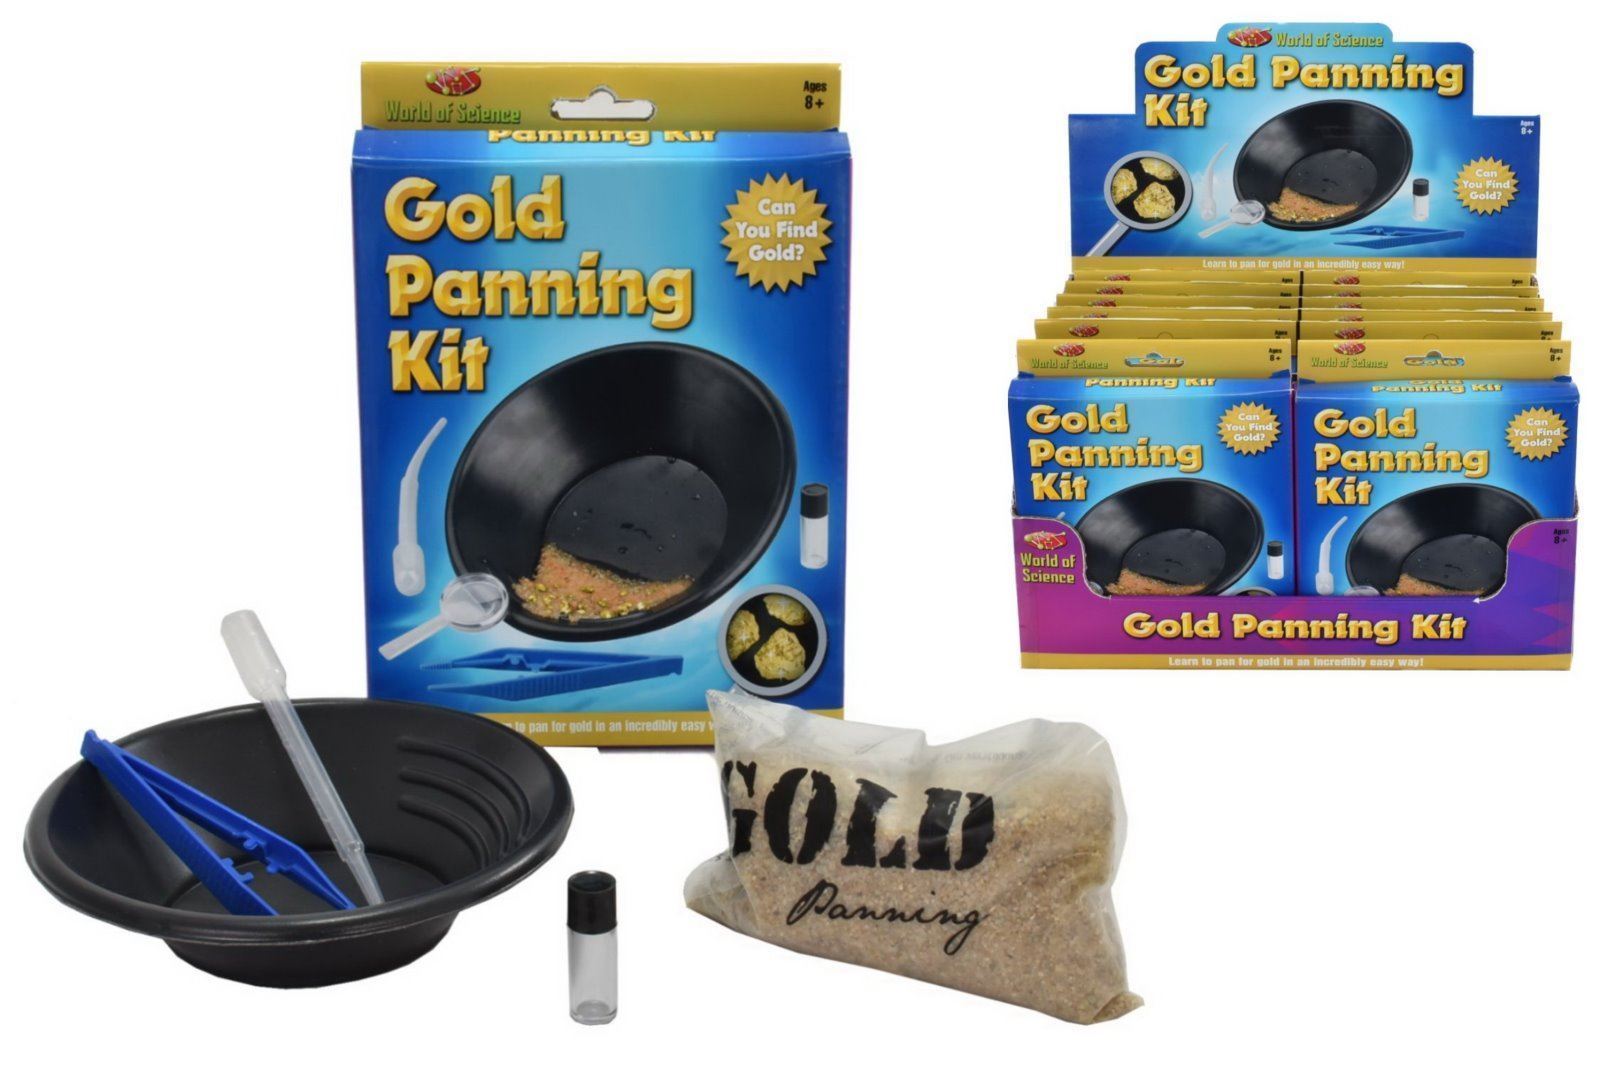 Gold Panning Kit